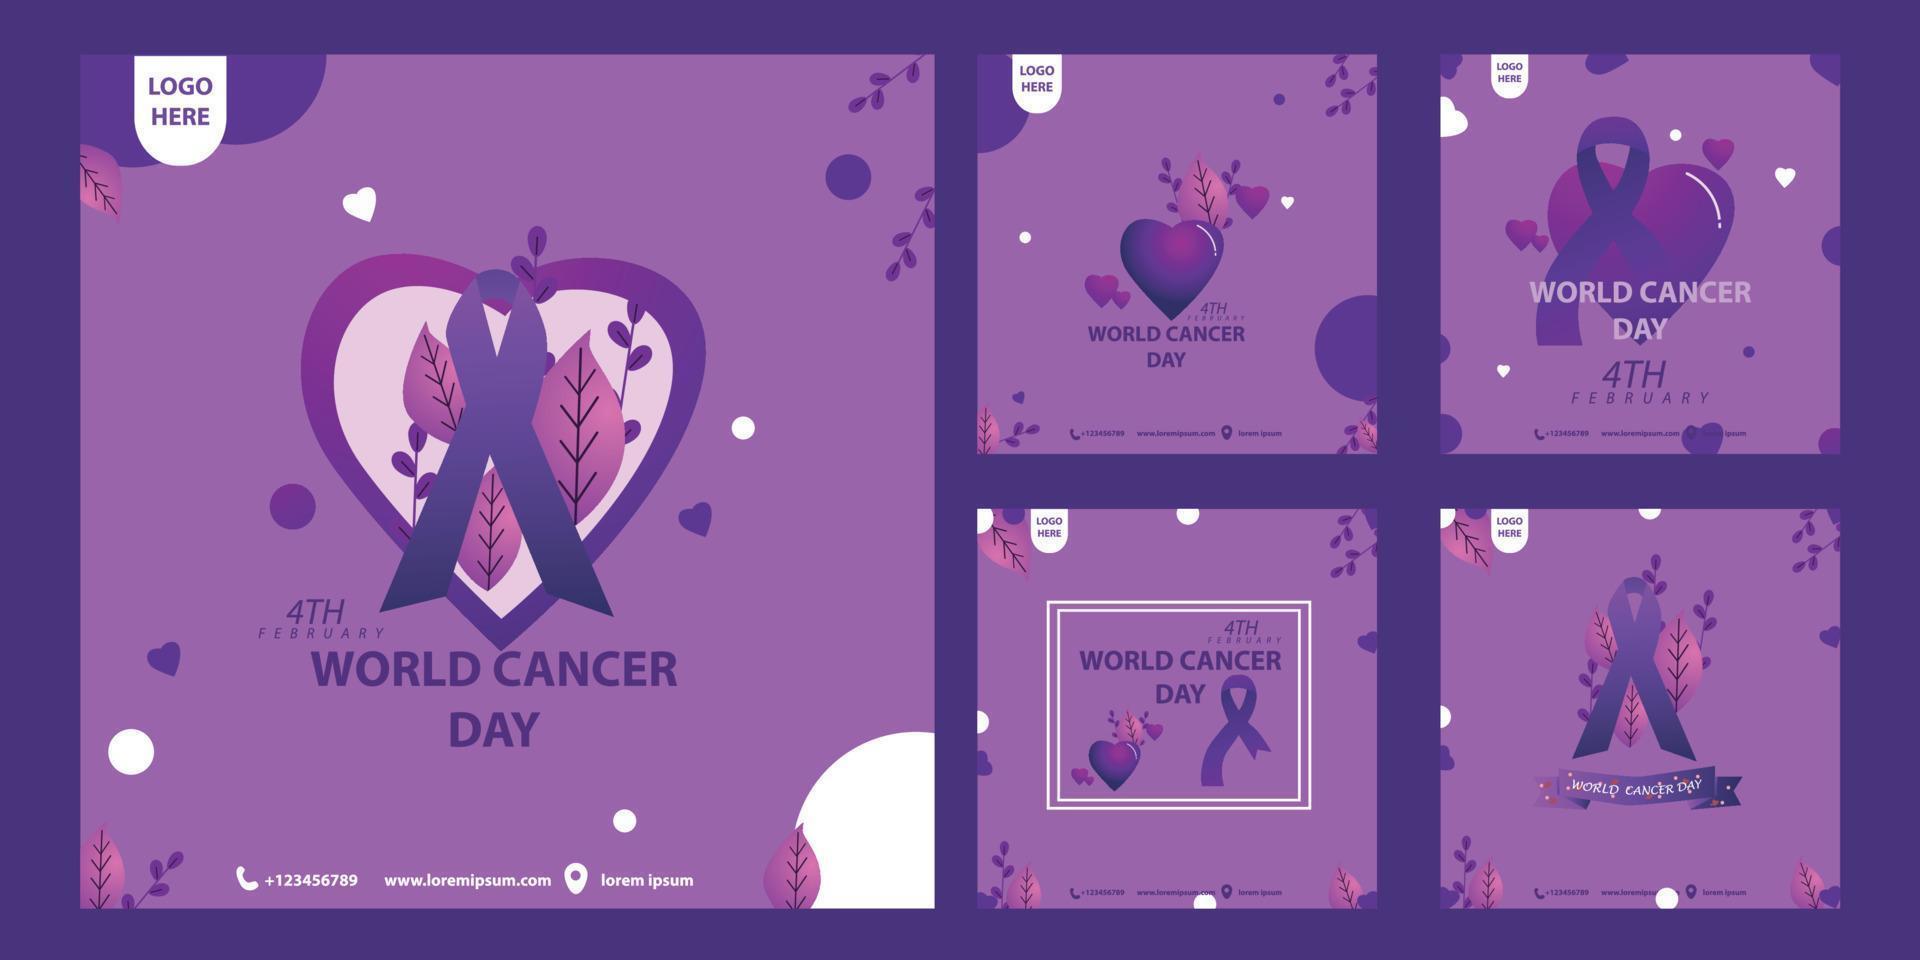 sociale media inviare modello mondo cancro giorno per commemorare mondo cancro giorno su febbraio 4 ° con vettore eps 10 formato